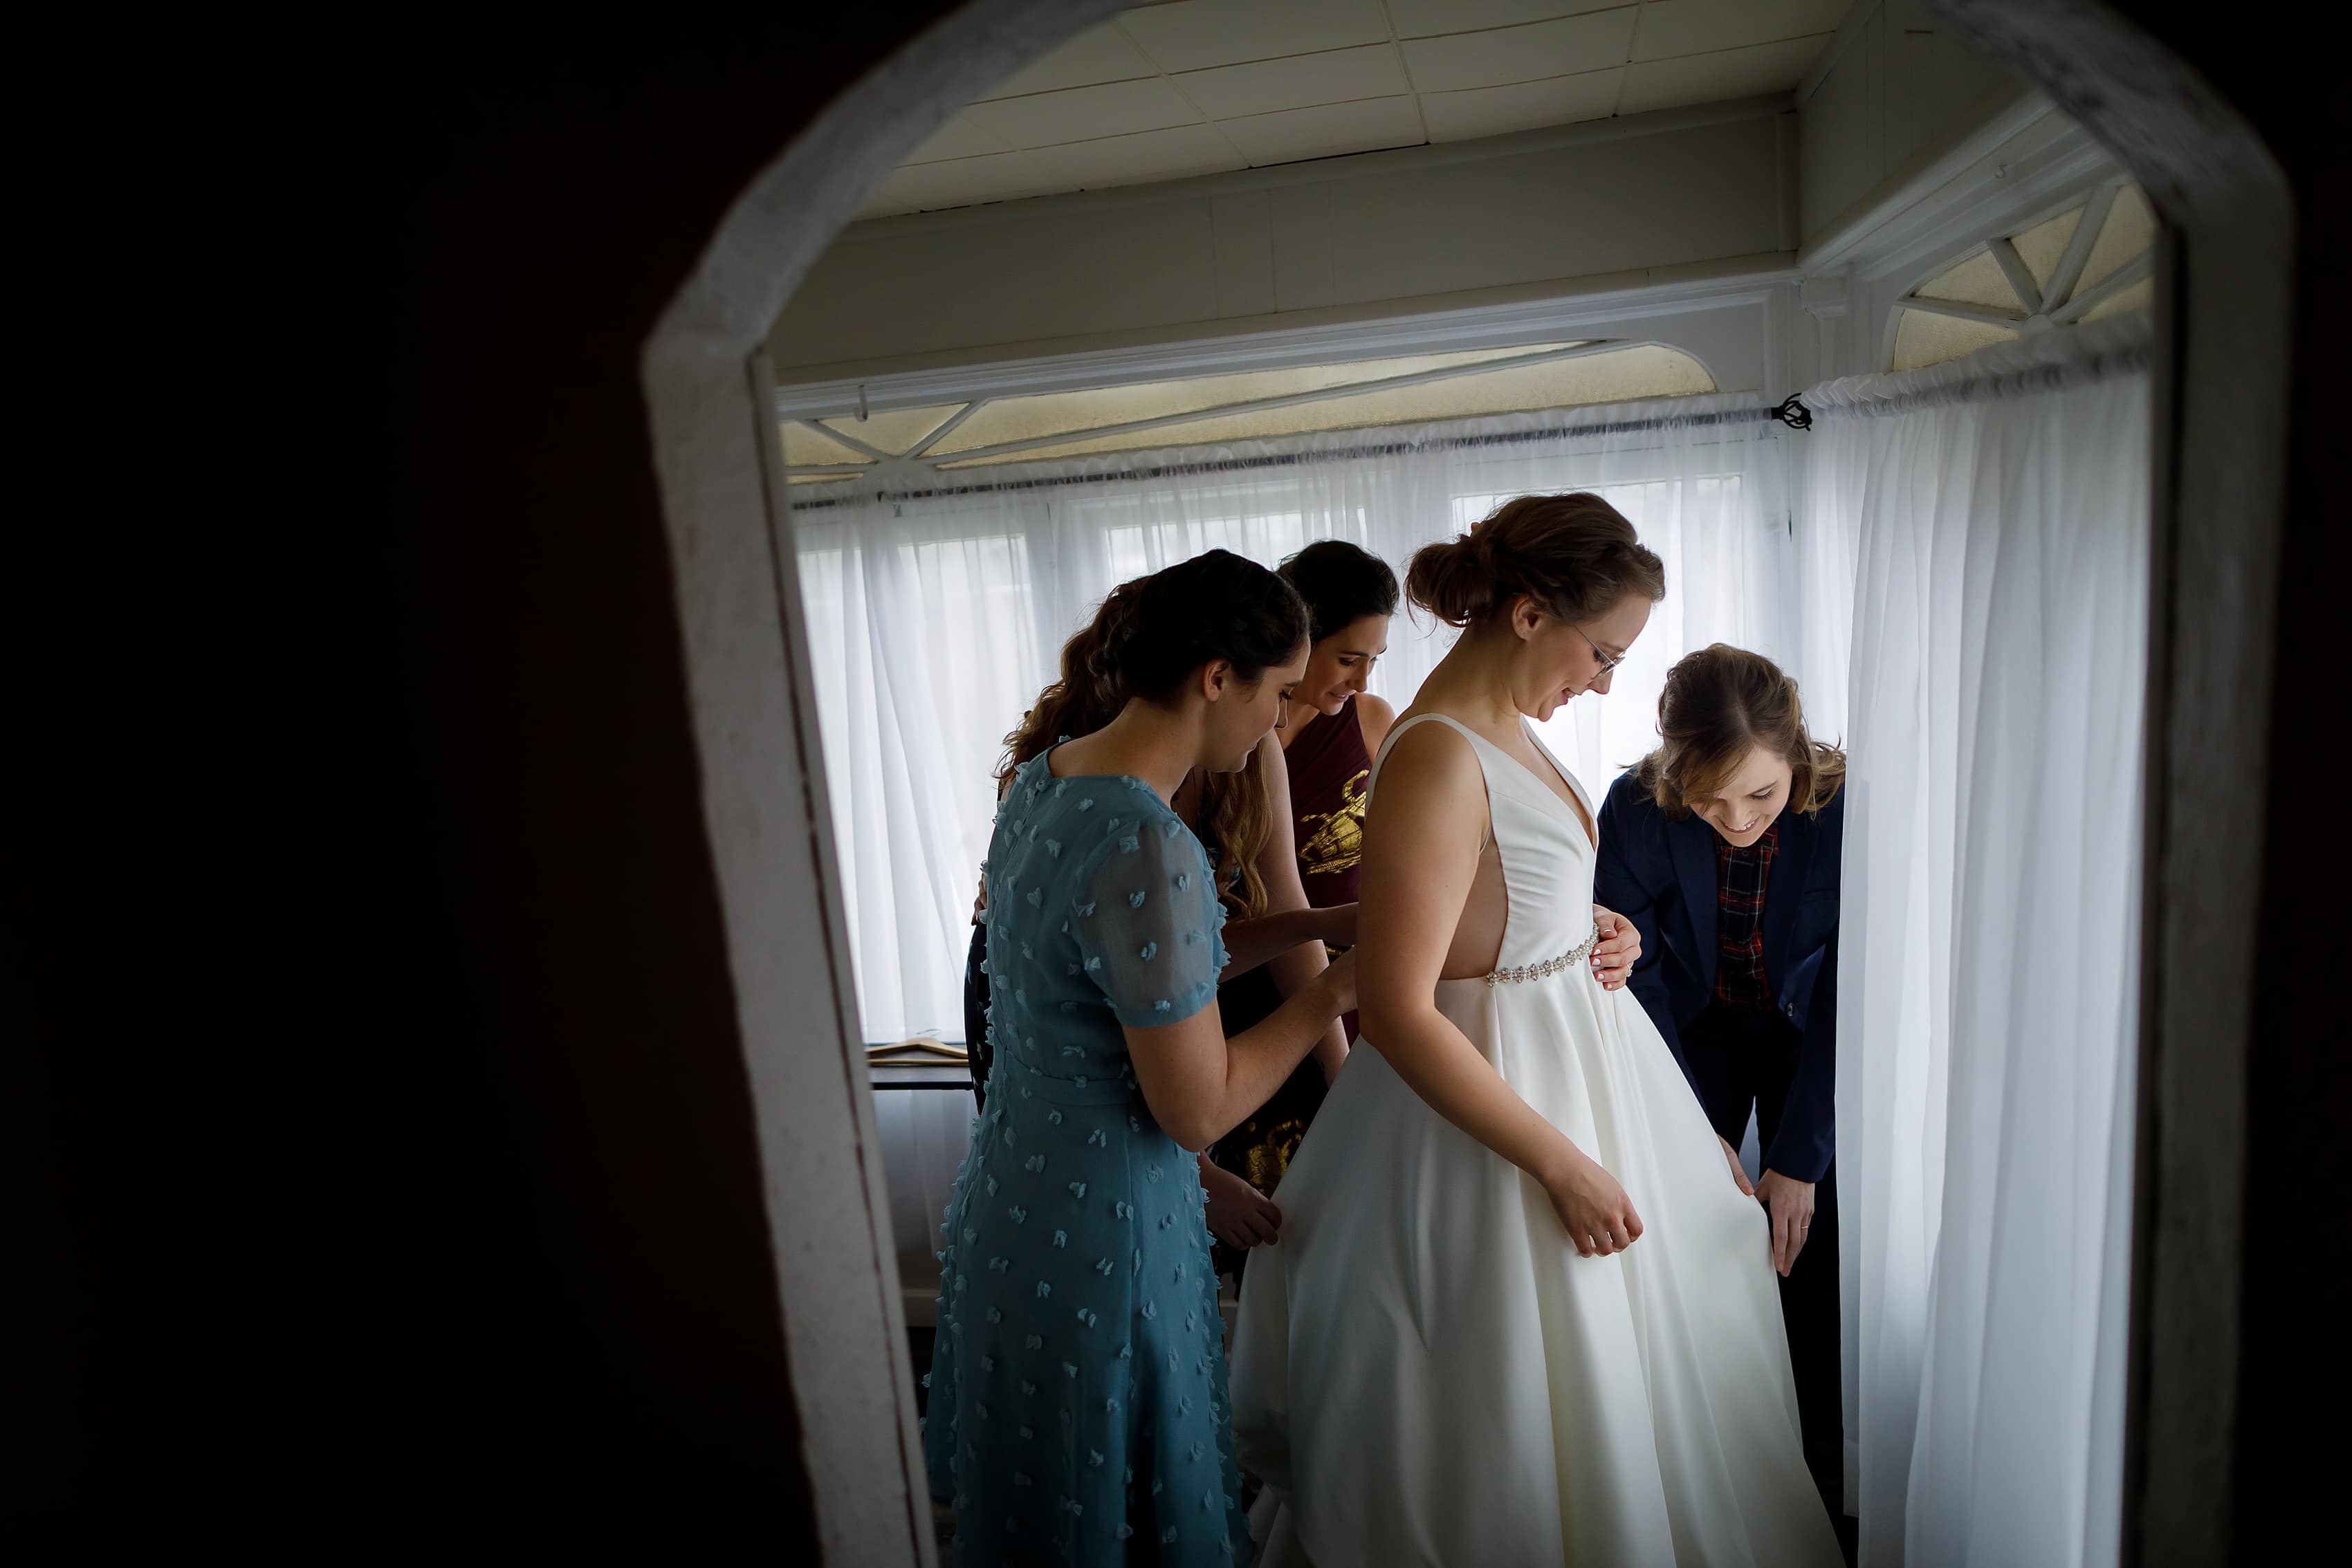 bridesmaids help bride into wedding dress